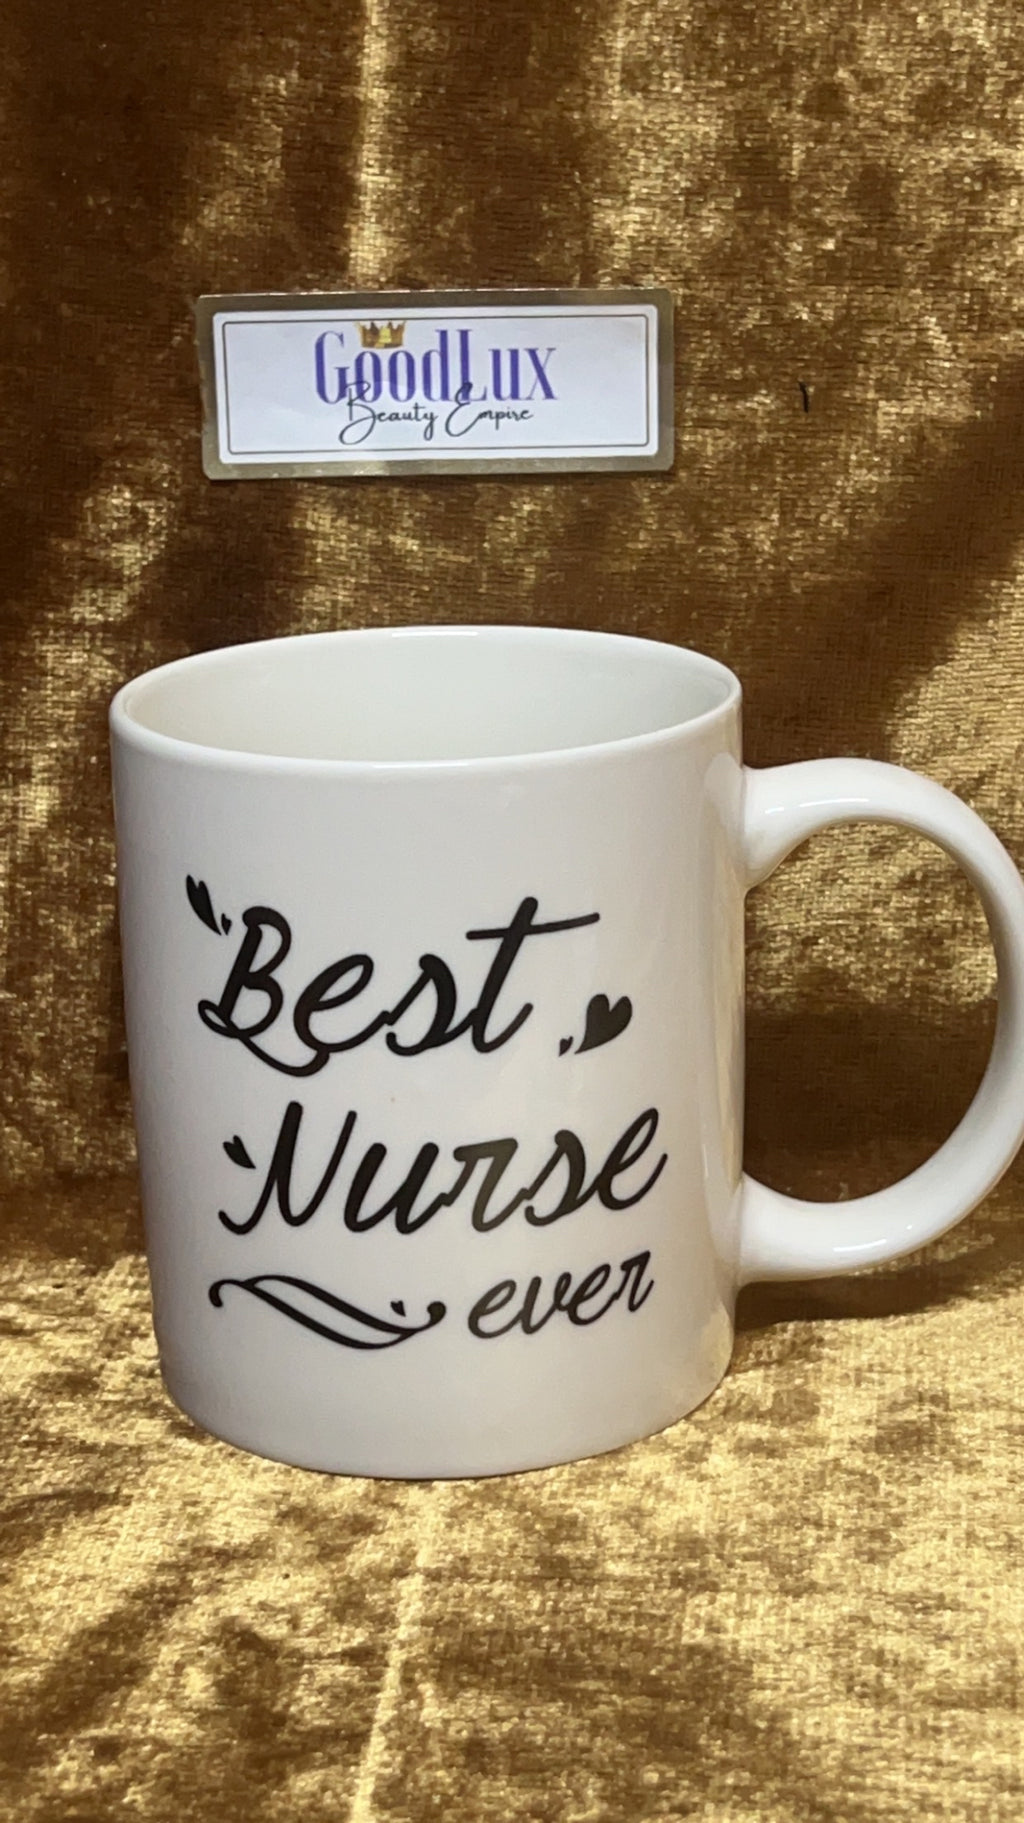 Best Nurse Ever Mug